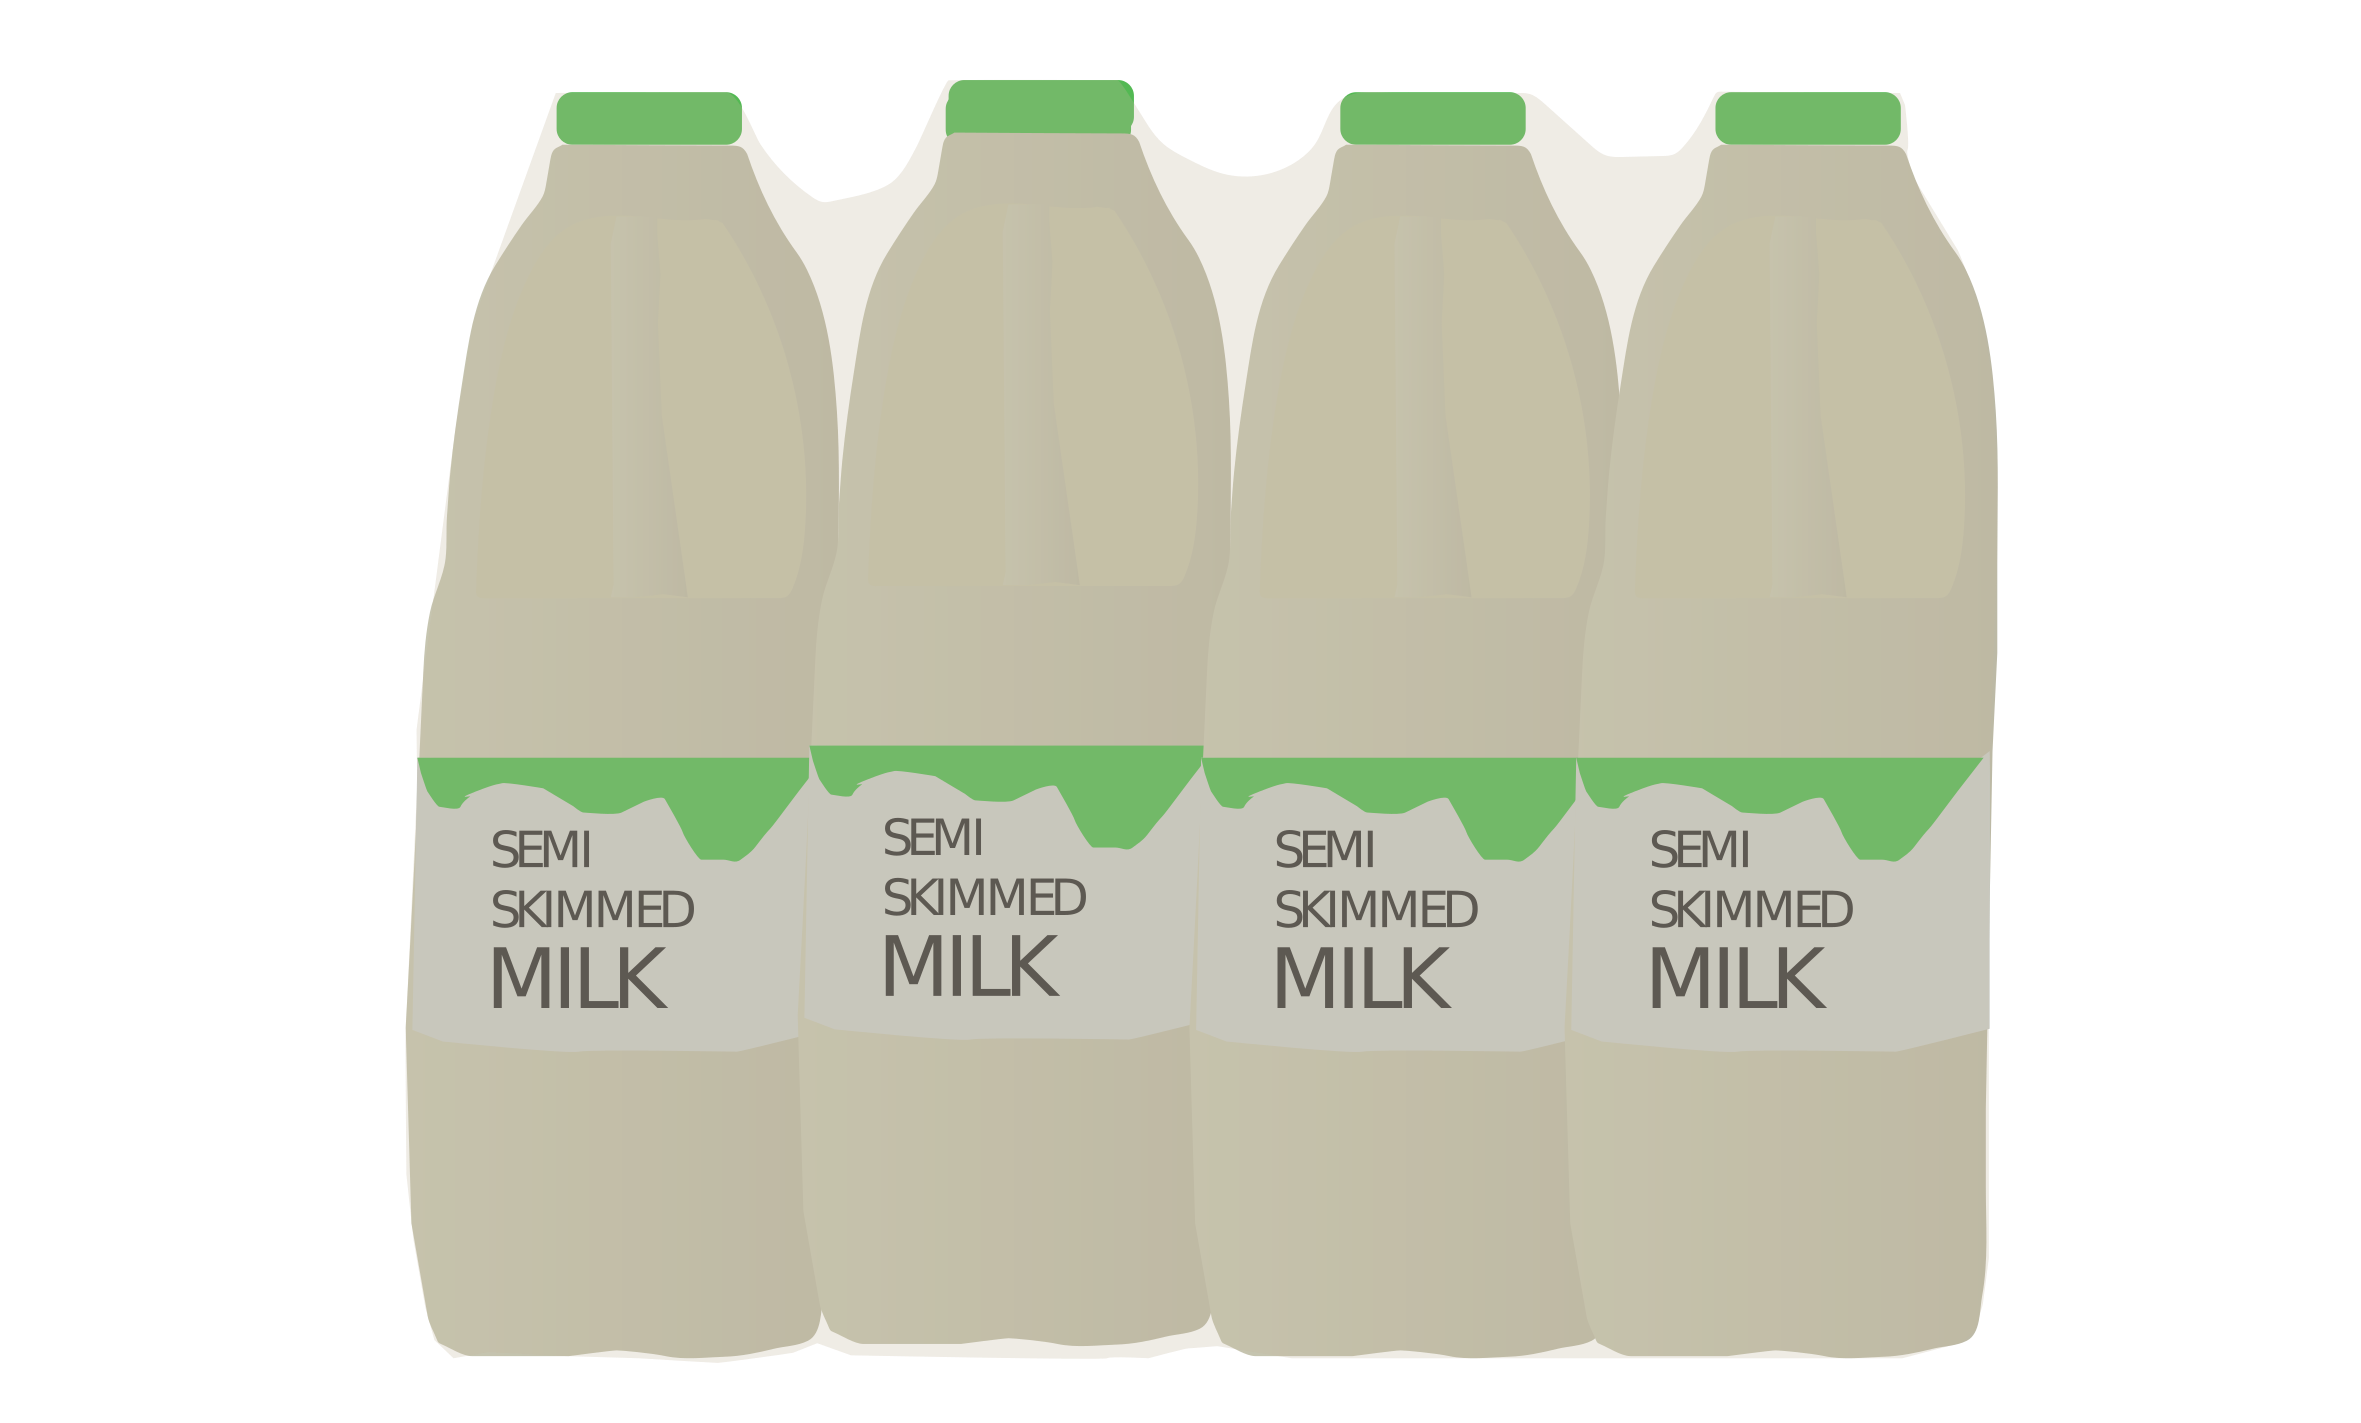 Shrink-wrapped bottles of milk